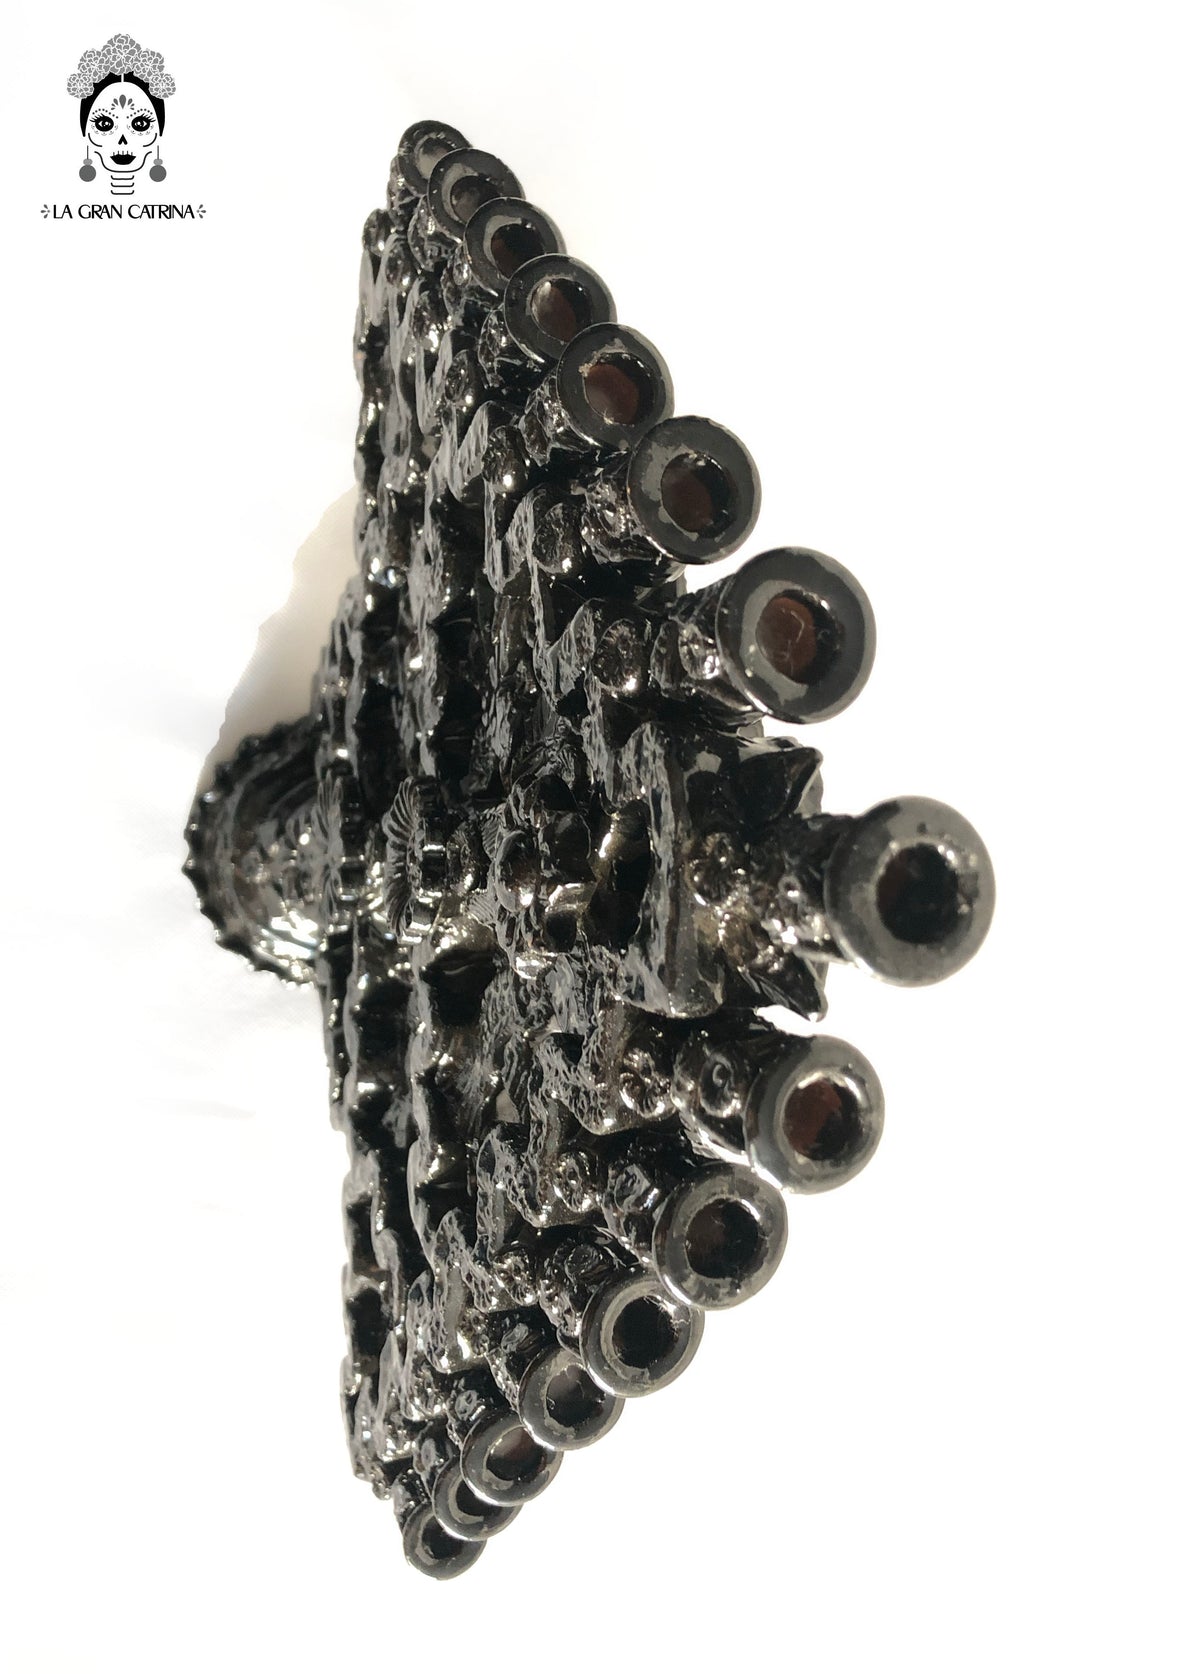 Candelero negro de 15 velas - Barro vidriado - 40 cm. 16 in.